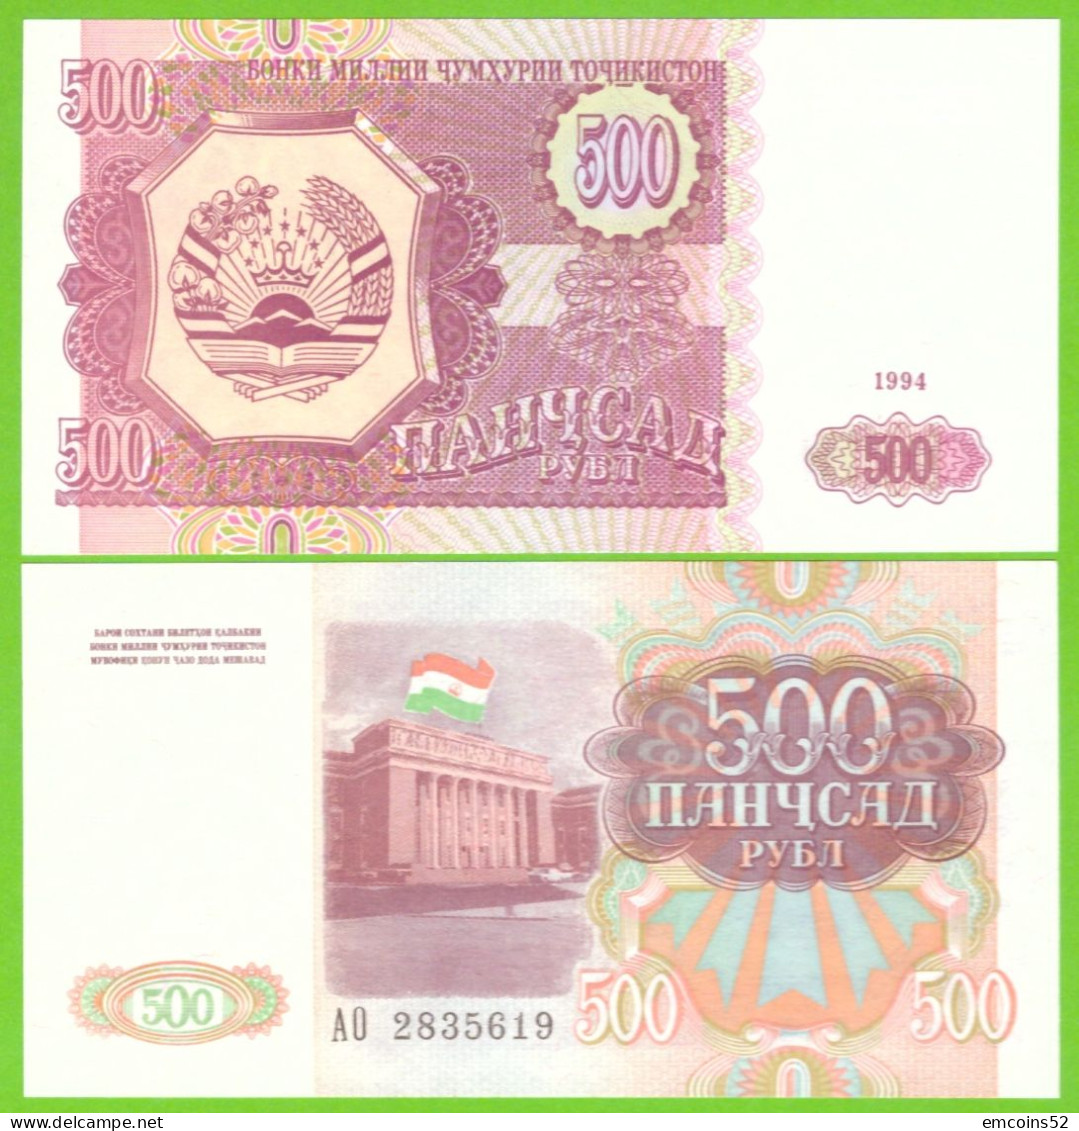 TAJIKISTAN 500 RUBL 1994 P-8 UNC - Tadzjikistan